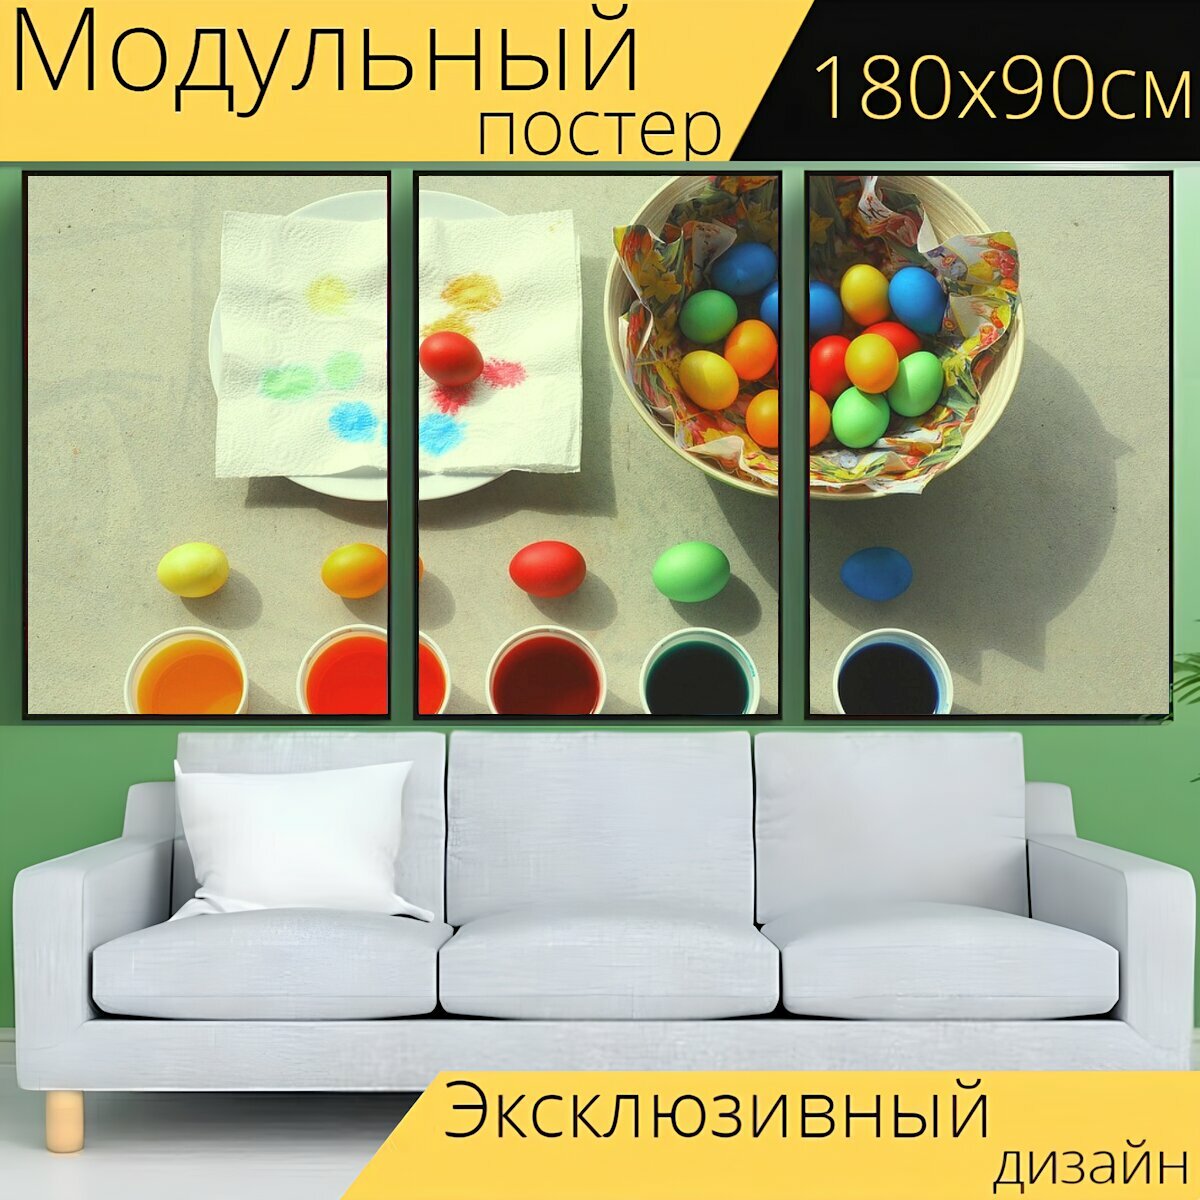 Модульный постер "Цвет, пасха, окрашенные яйца" 180 x 90 см. для интерьера